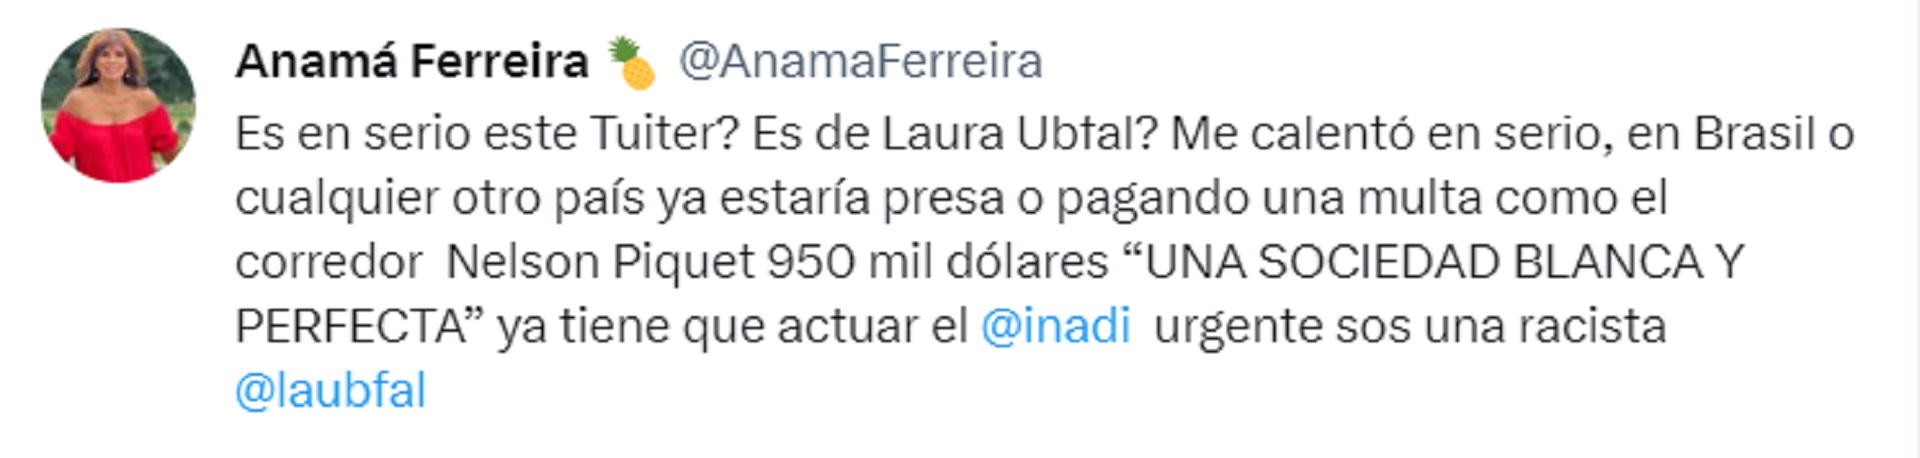 El tuit de Anamá Ferreira